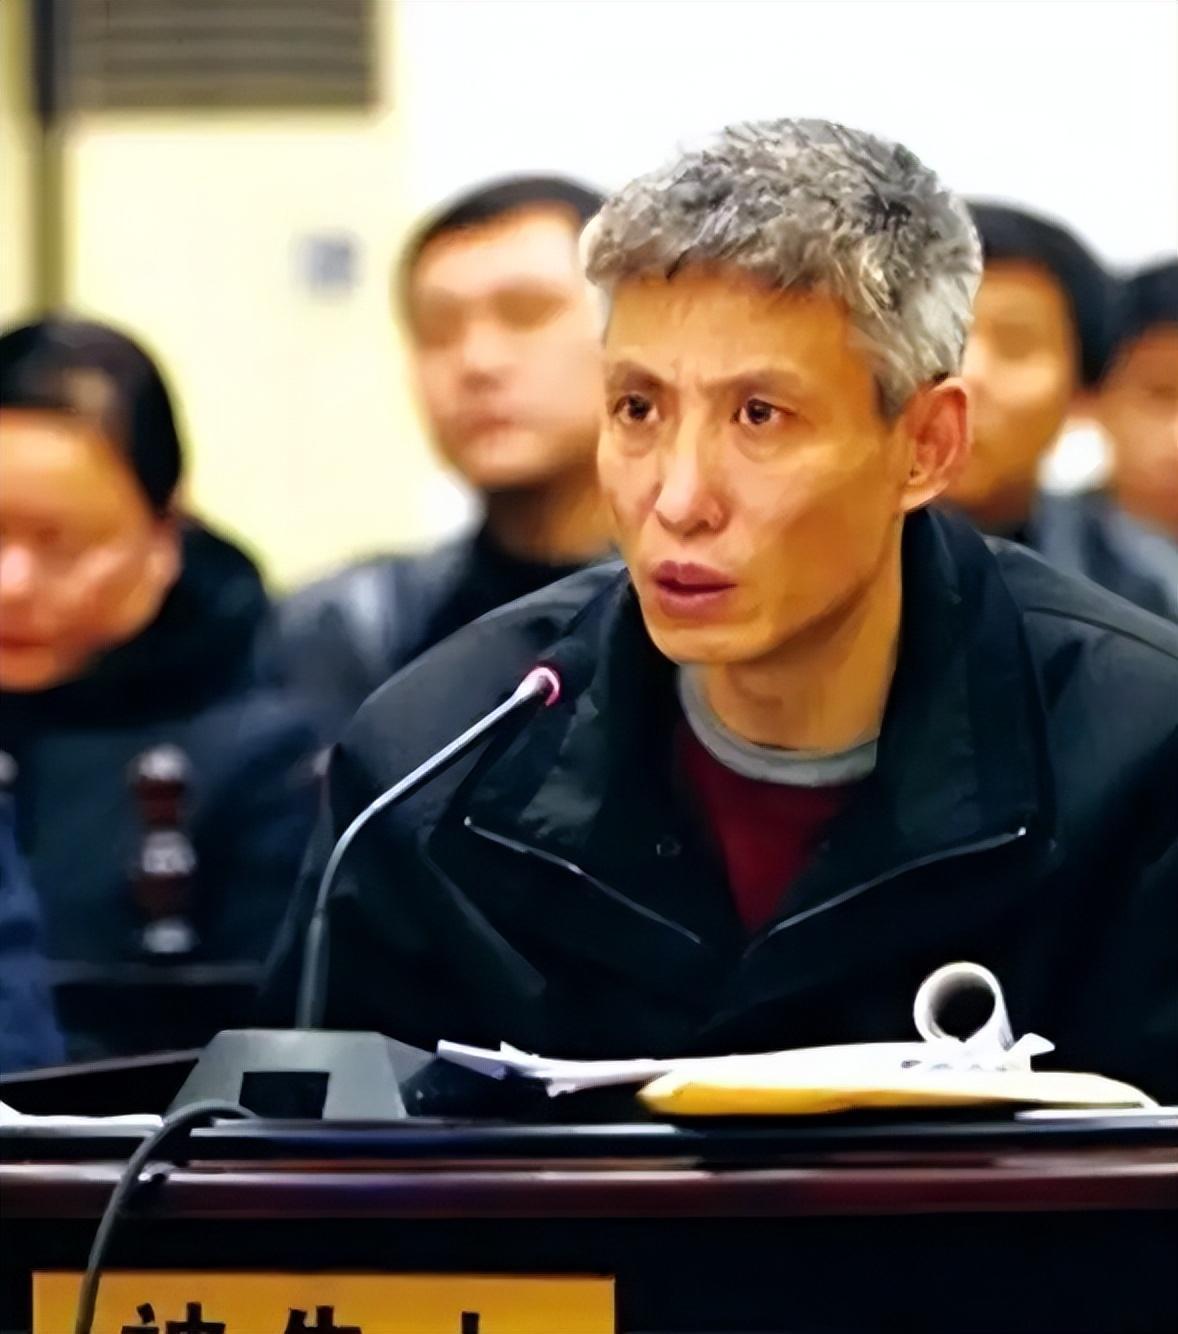 2000年,沈阳黑帮刘涌入狱,14名律师帮他减刑,最终结局如何?